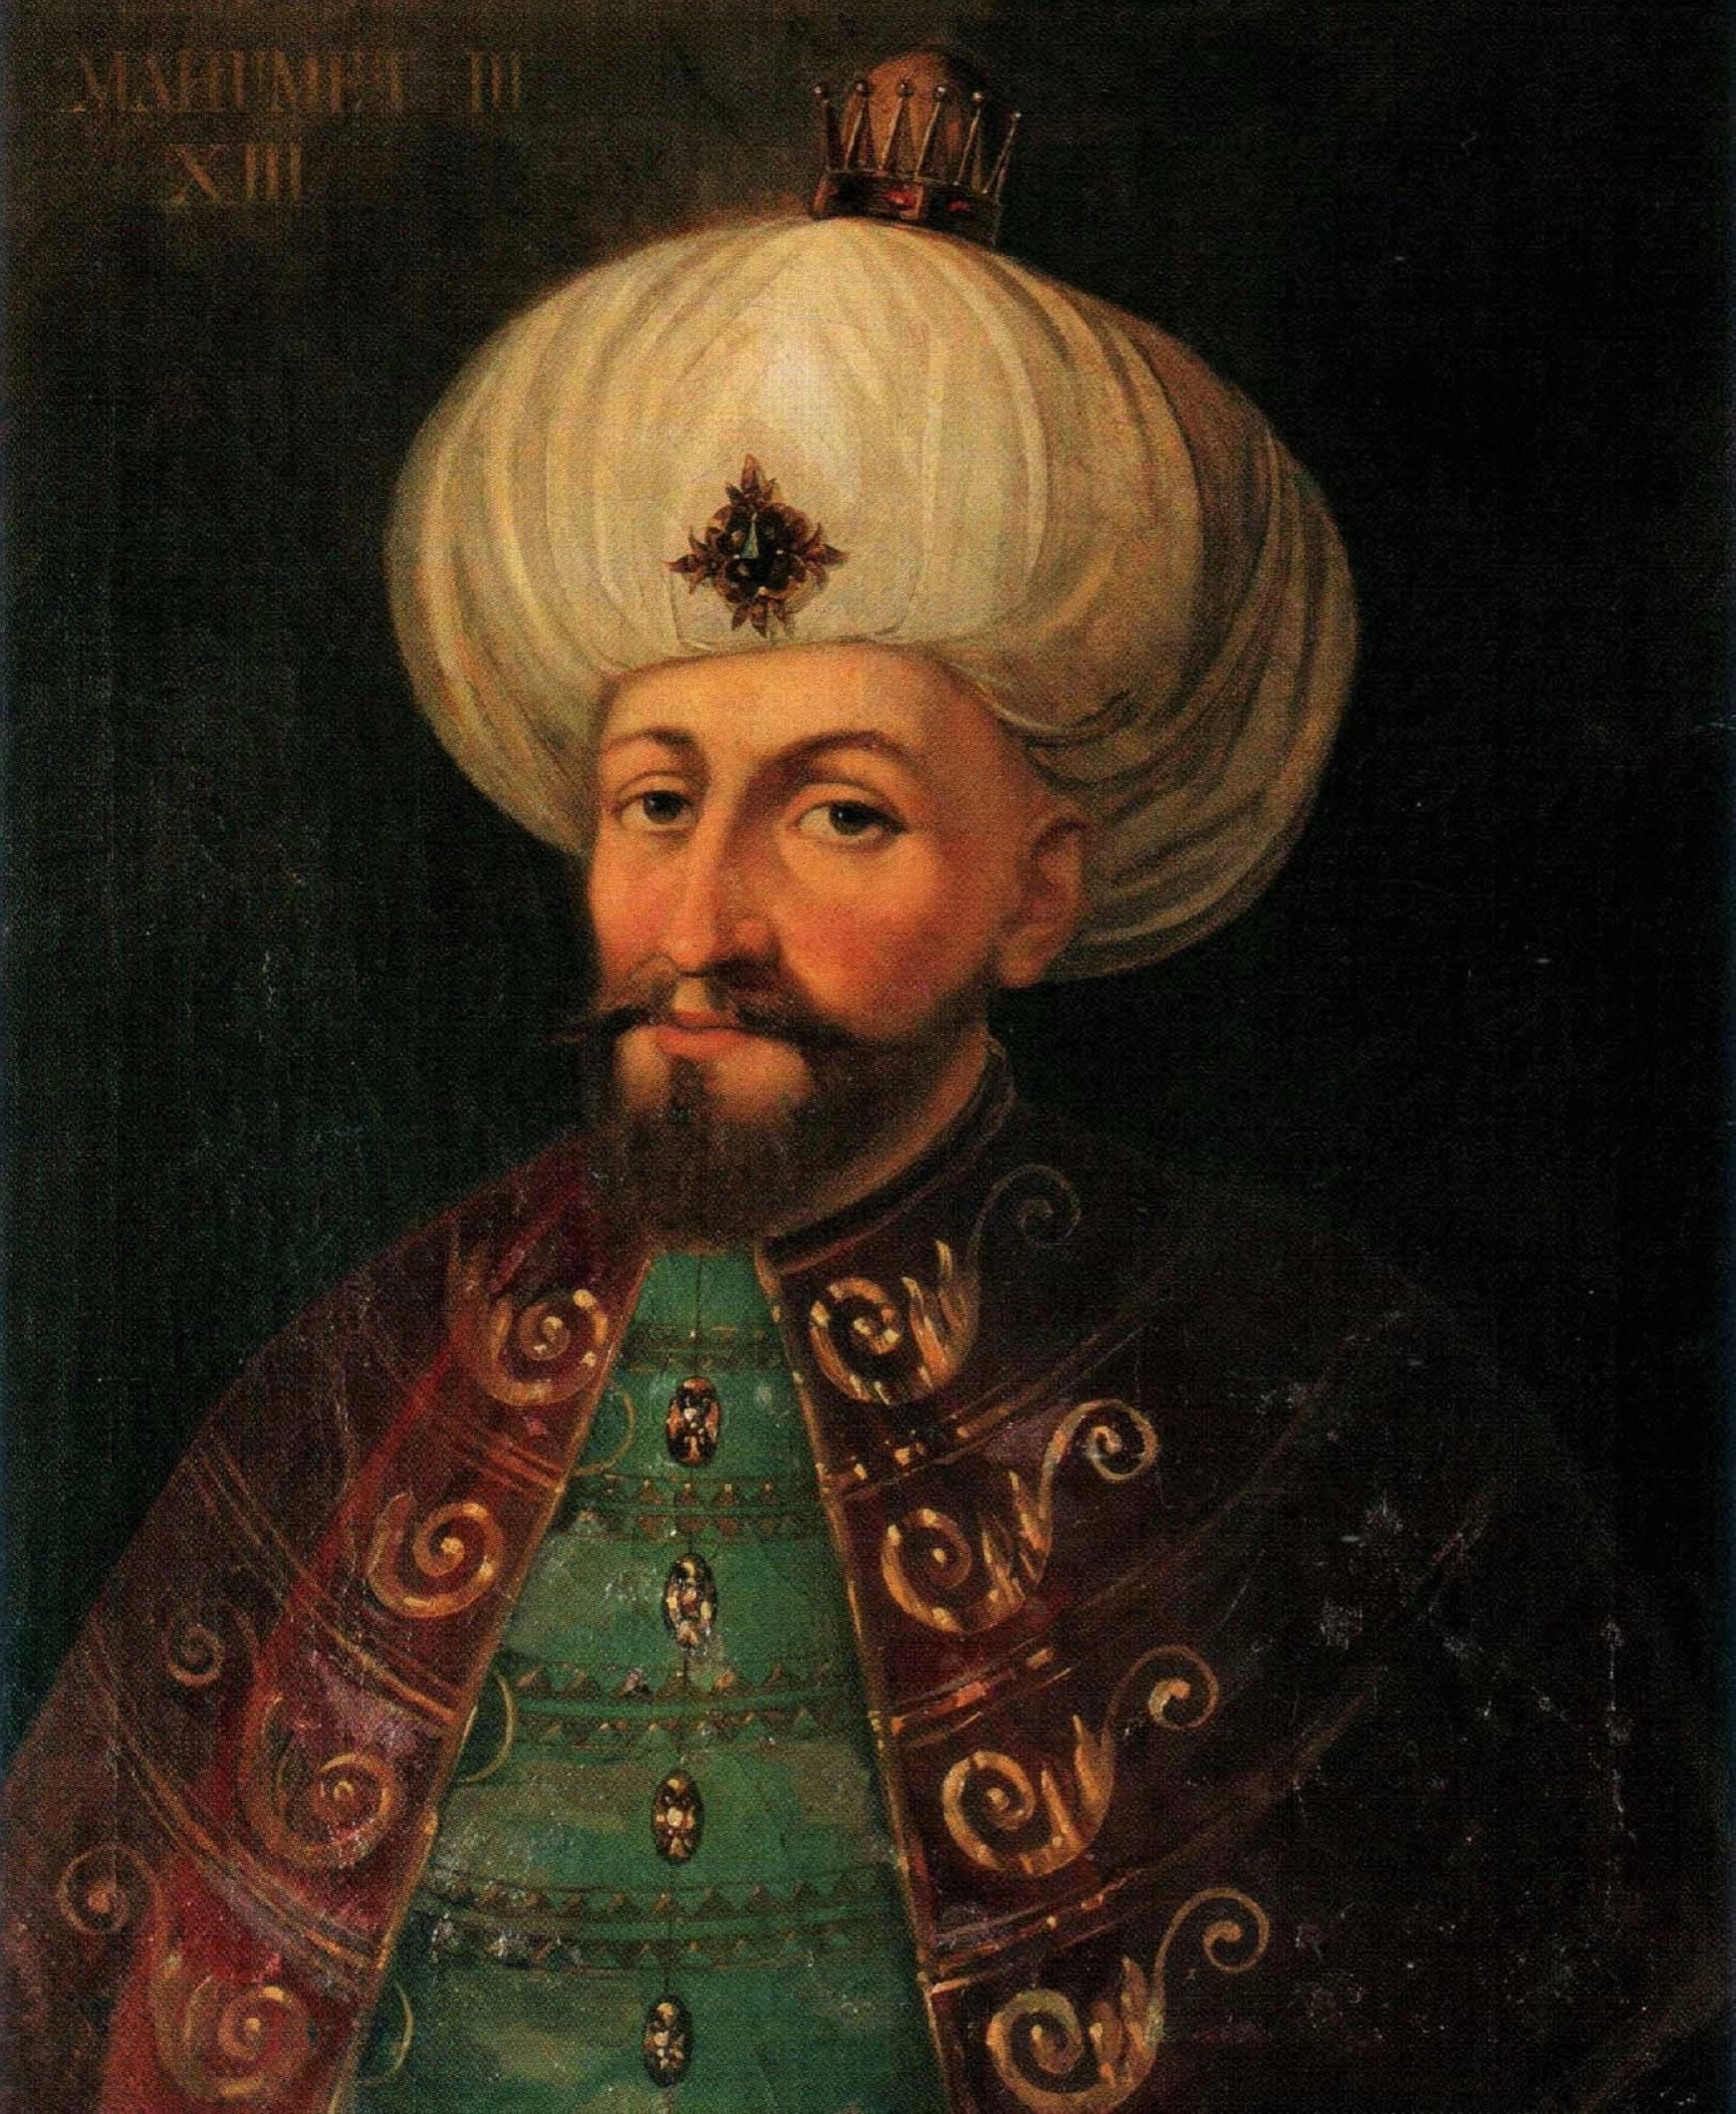 A portrait of Sultan Mehmed III.